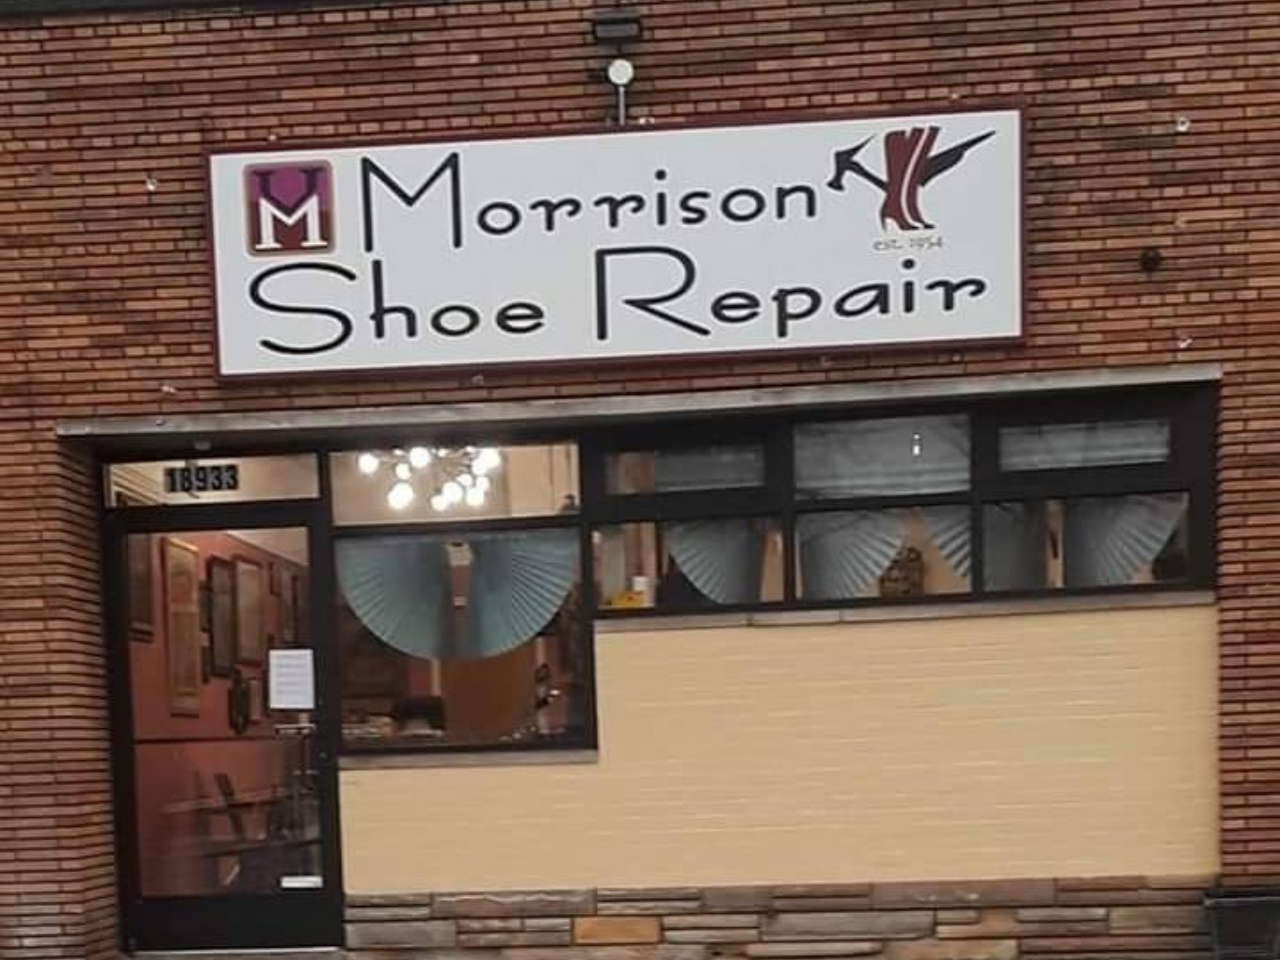 House of Morrison Shoe Repair